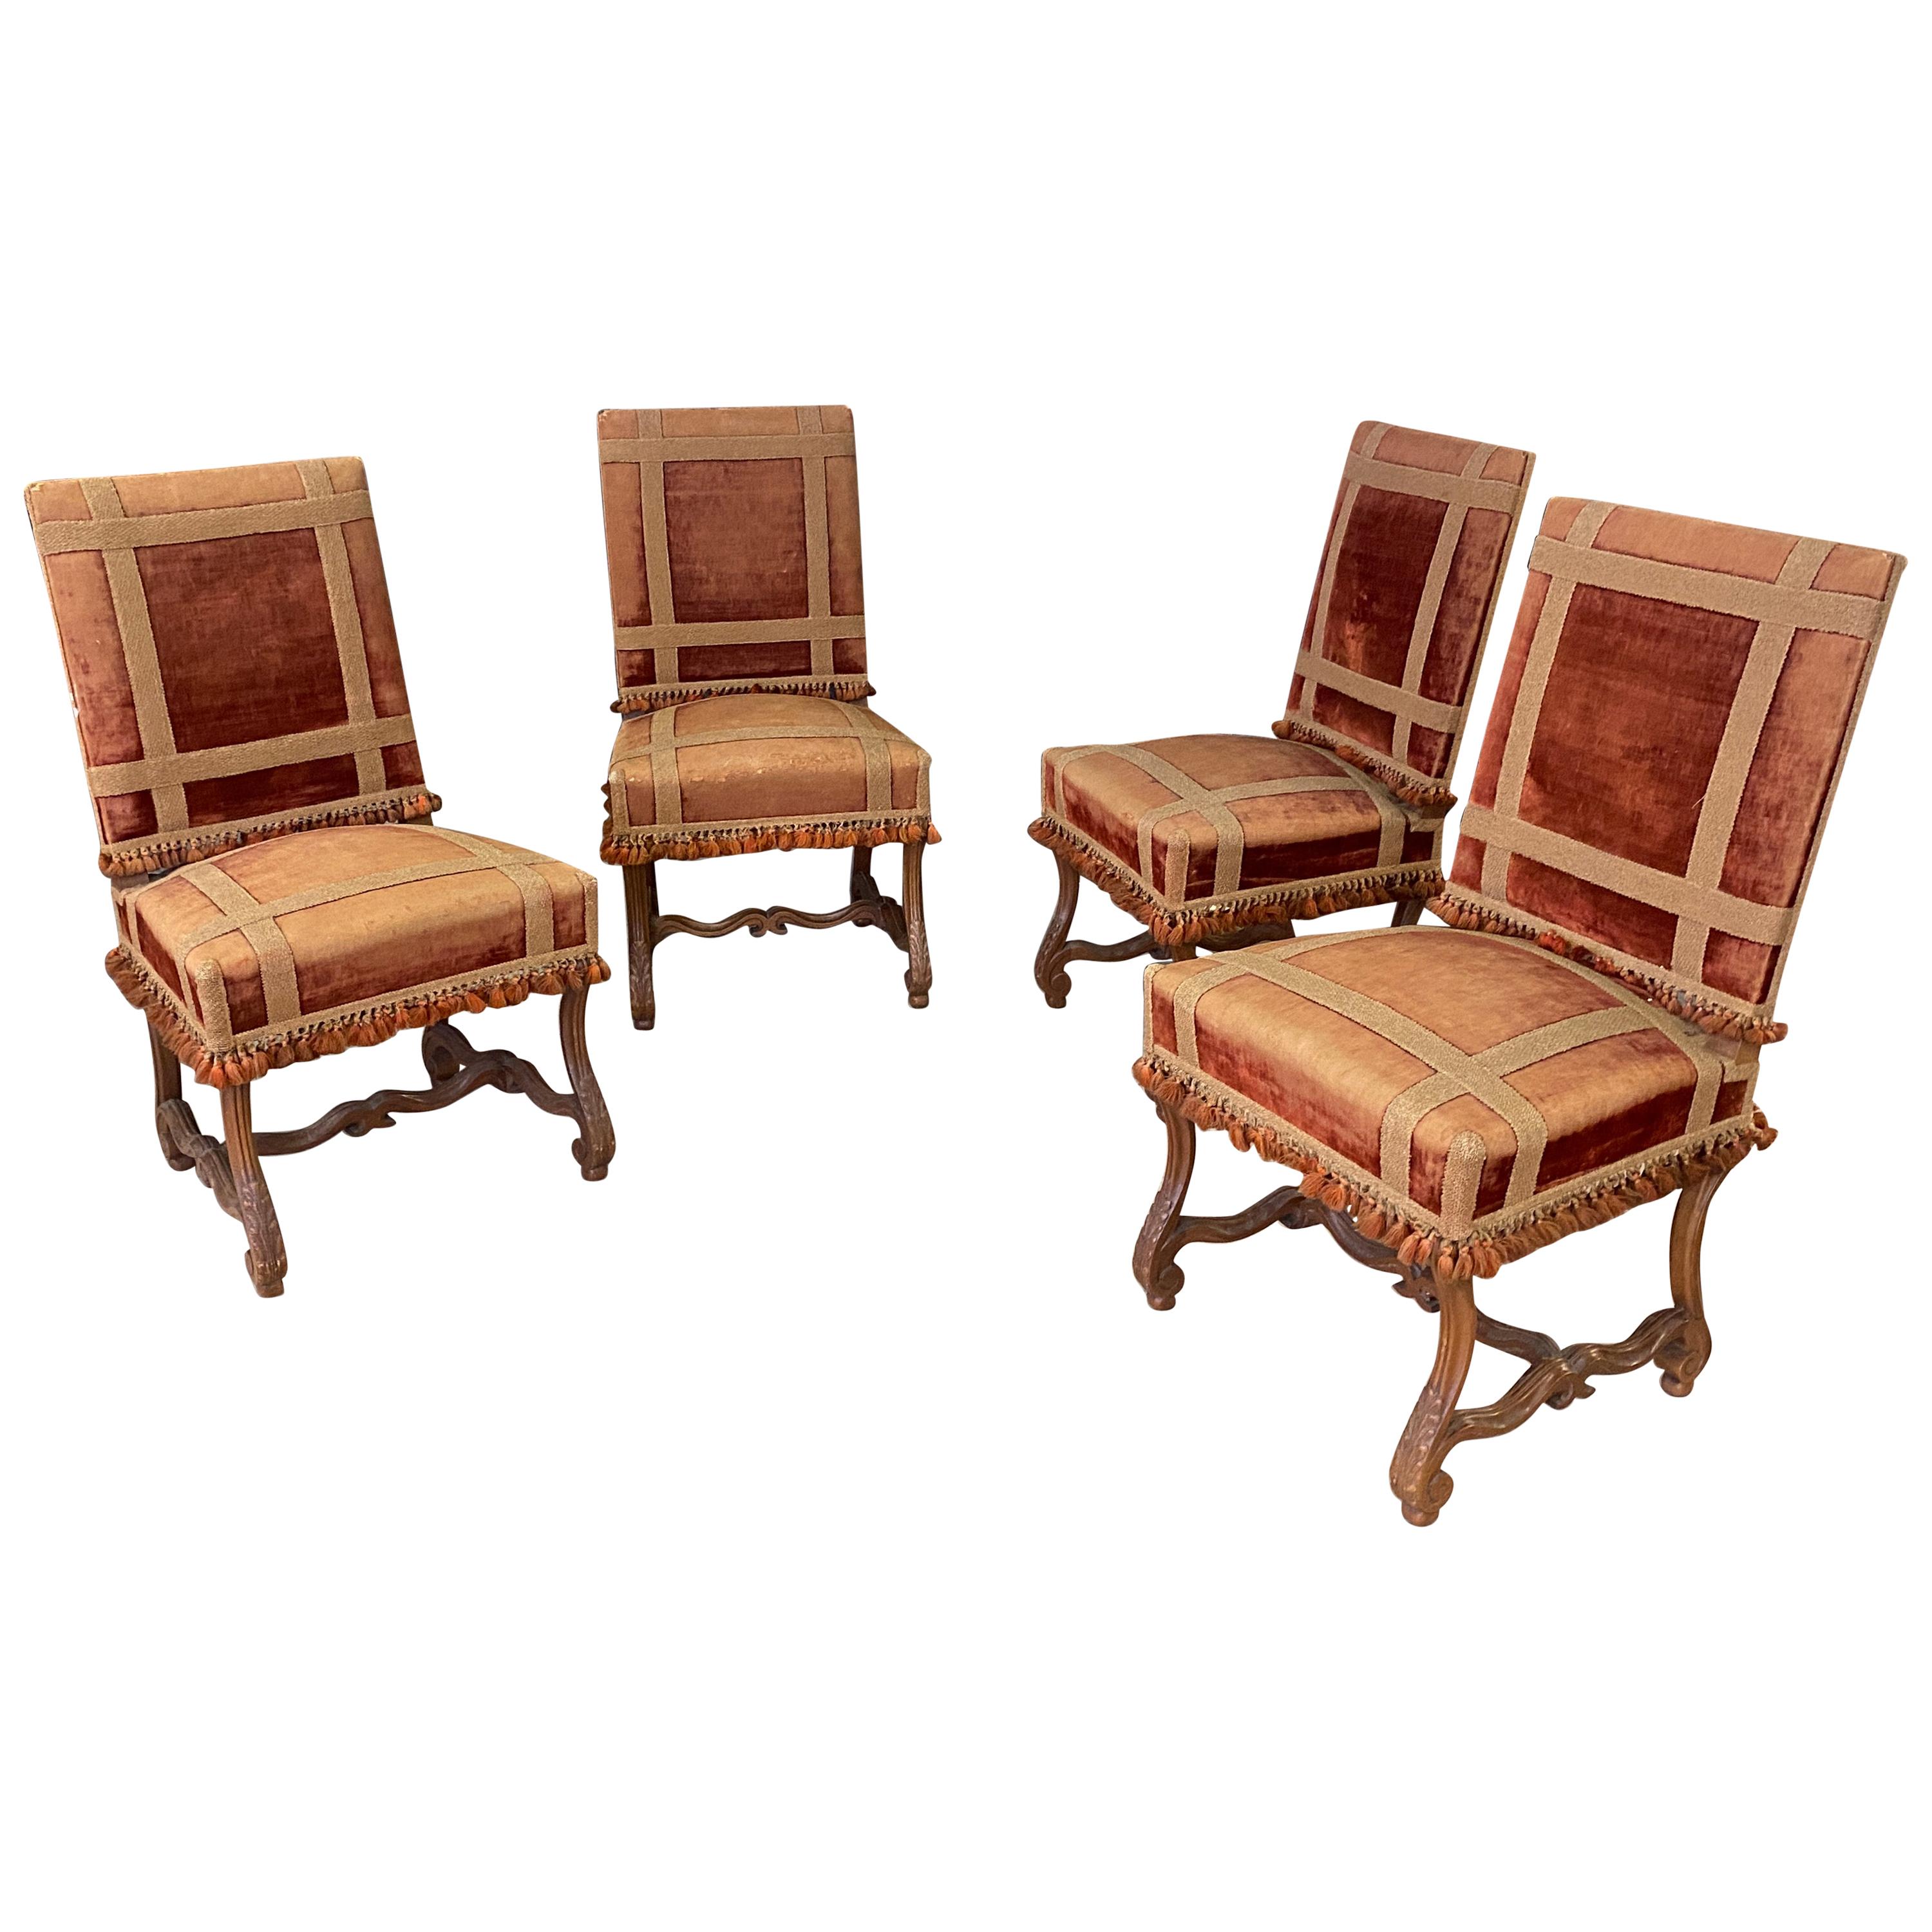 4 grandes chaises anciennes Louis XIV en noyer:: 19ème siècle:: provenant d'un château en vente